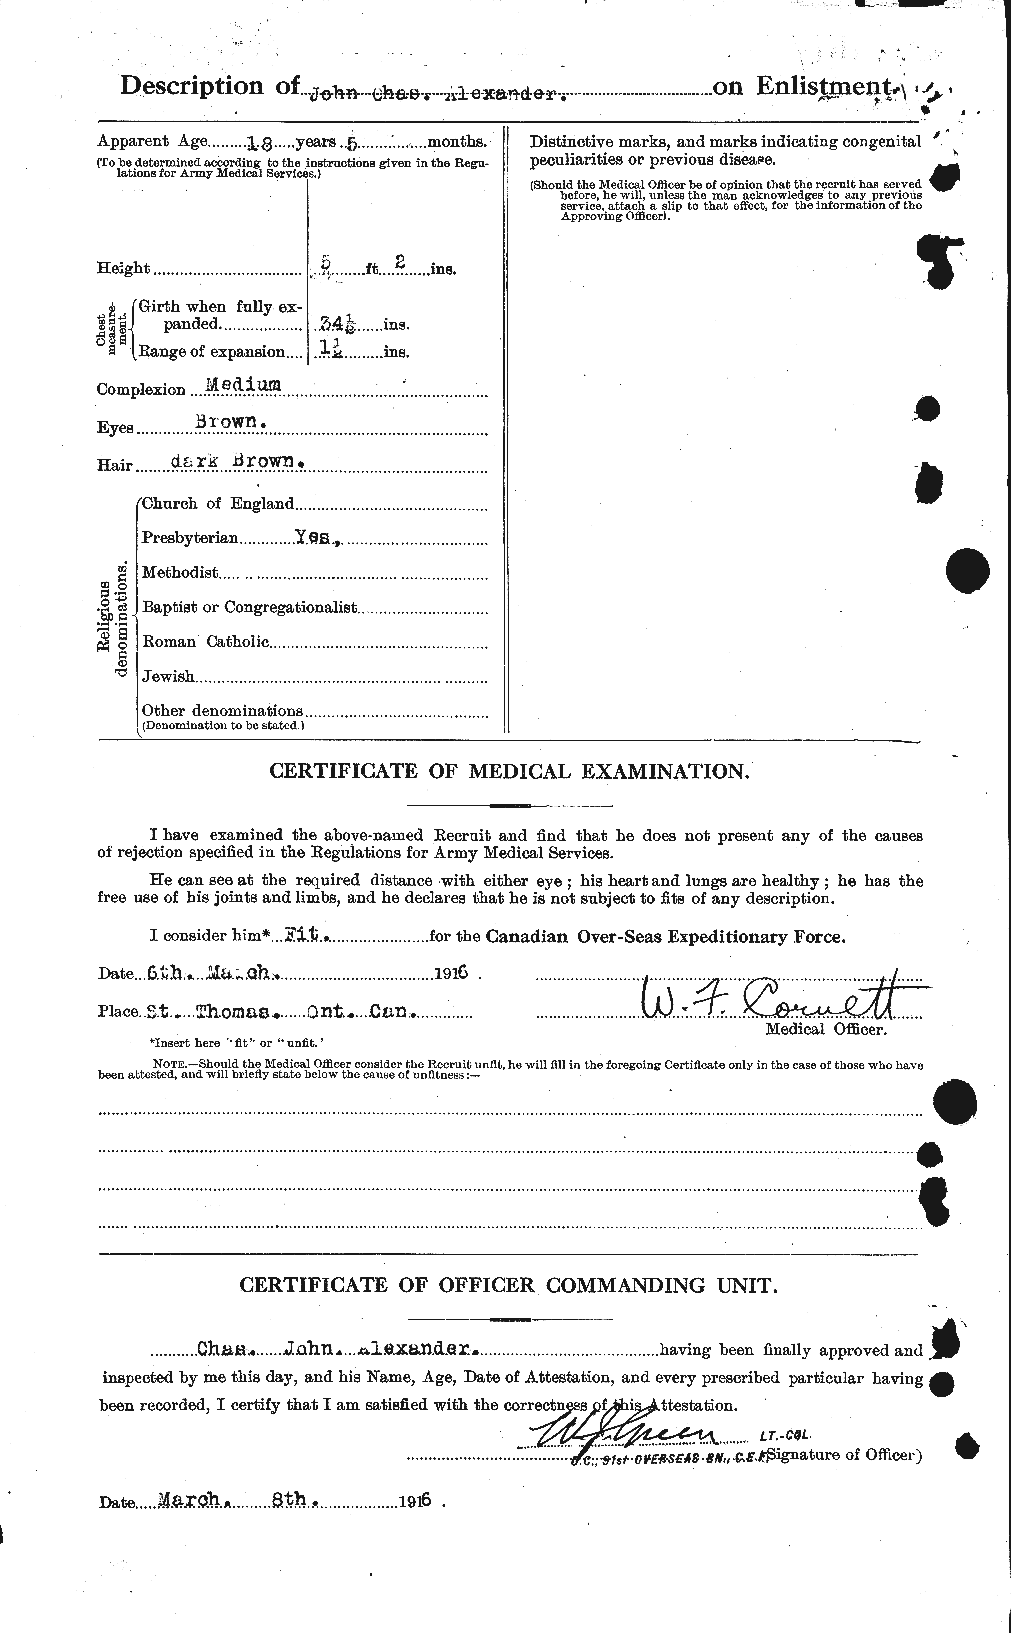 Dossiers du Personnel de la Première Guerre mondiale - CEC 204267b